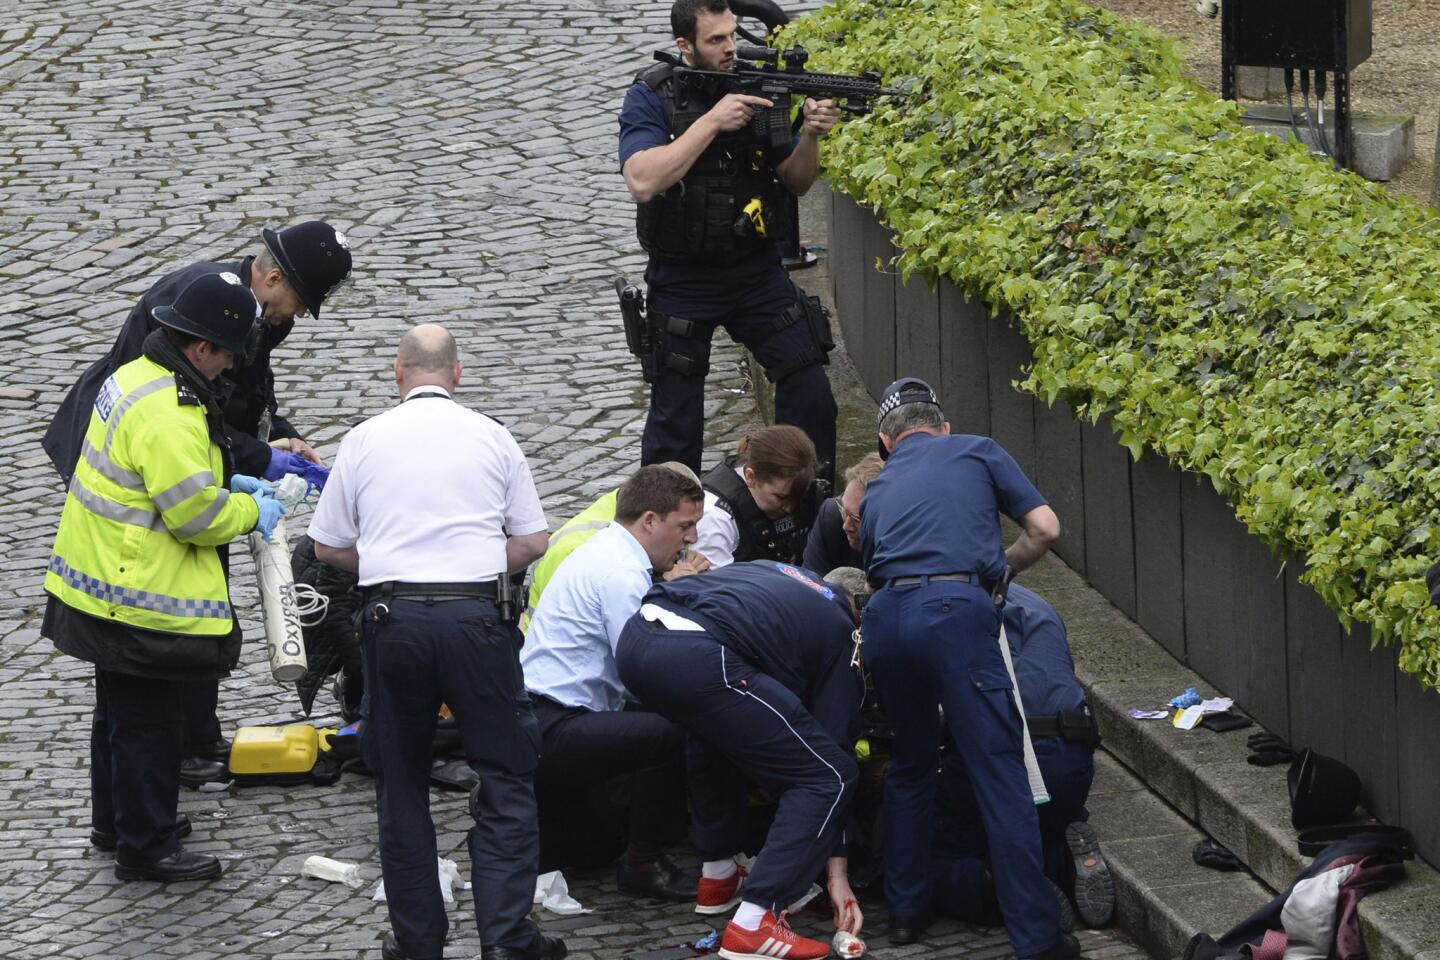 Terror attack in London near Parliament